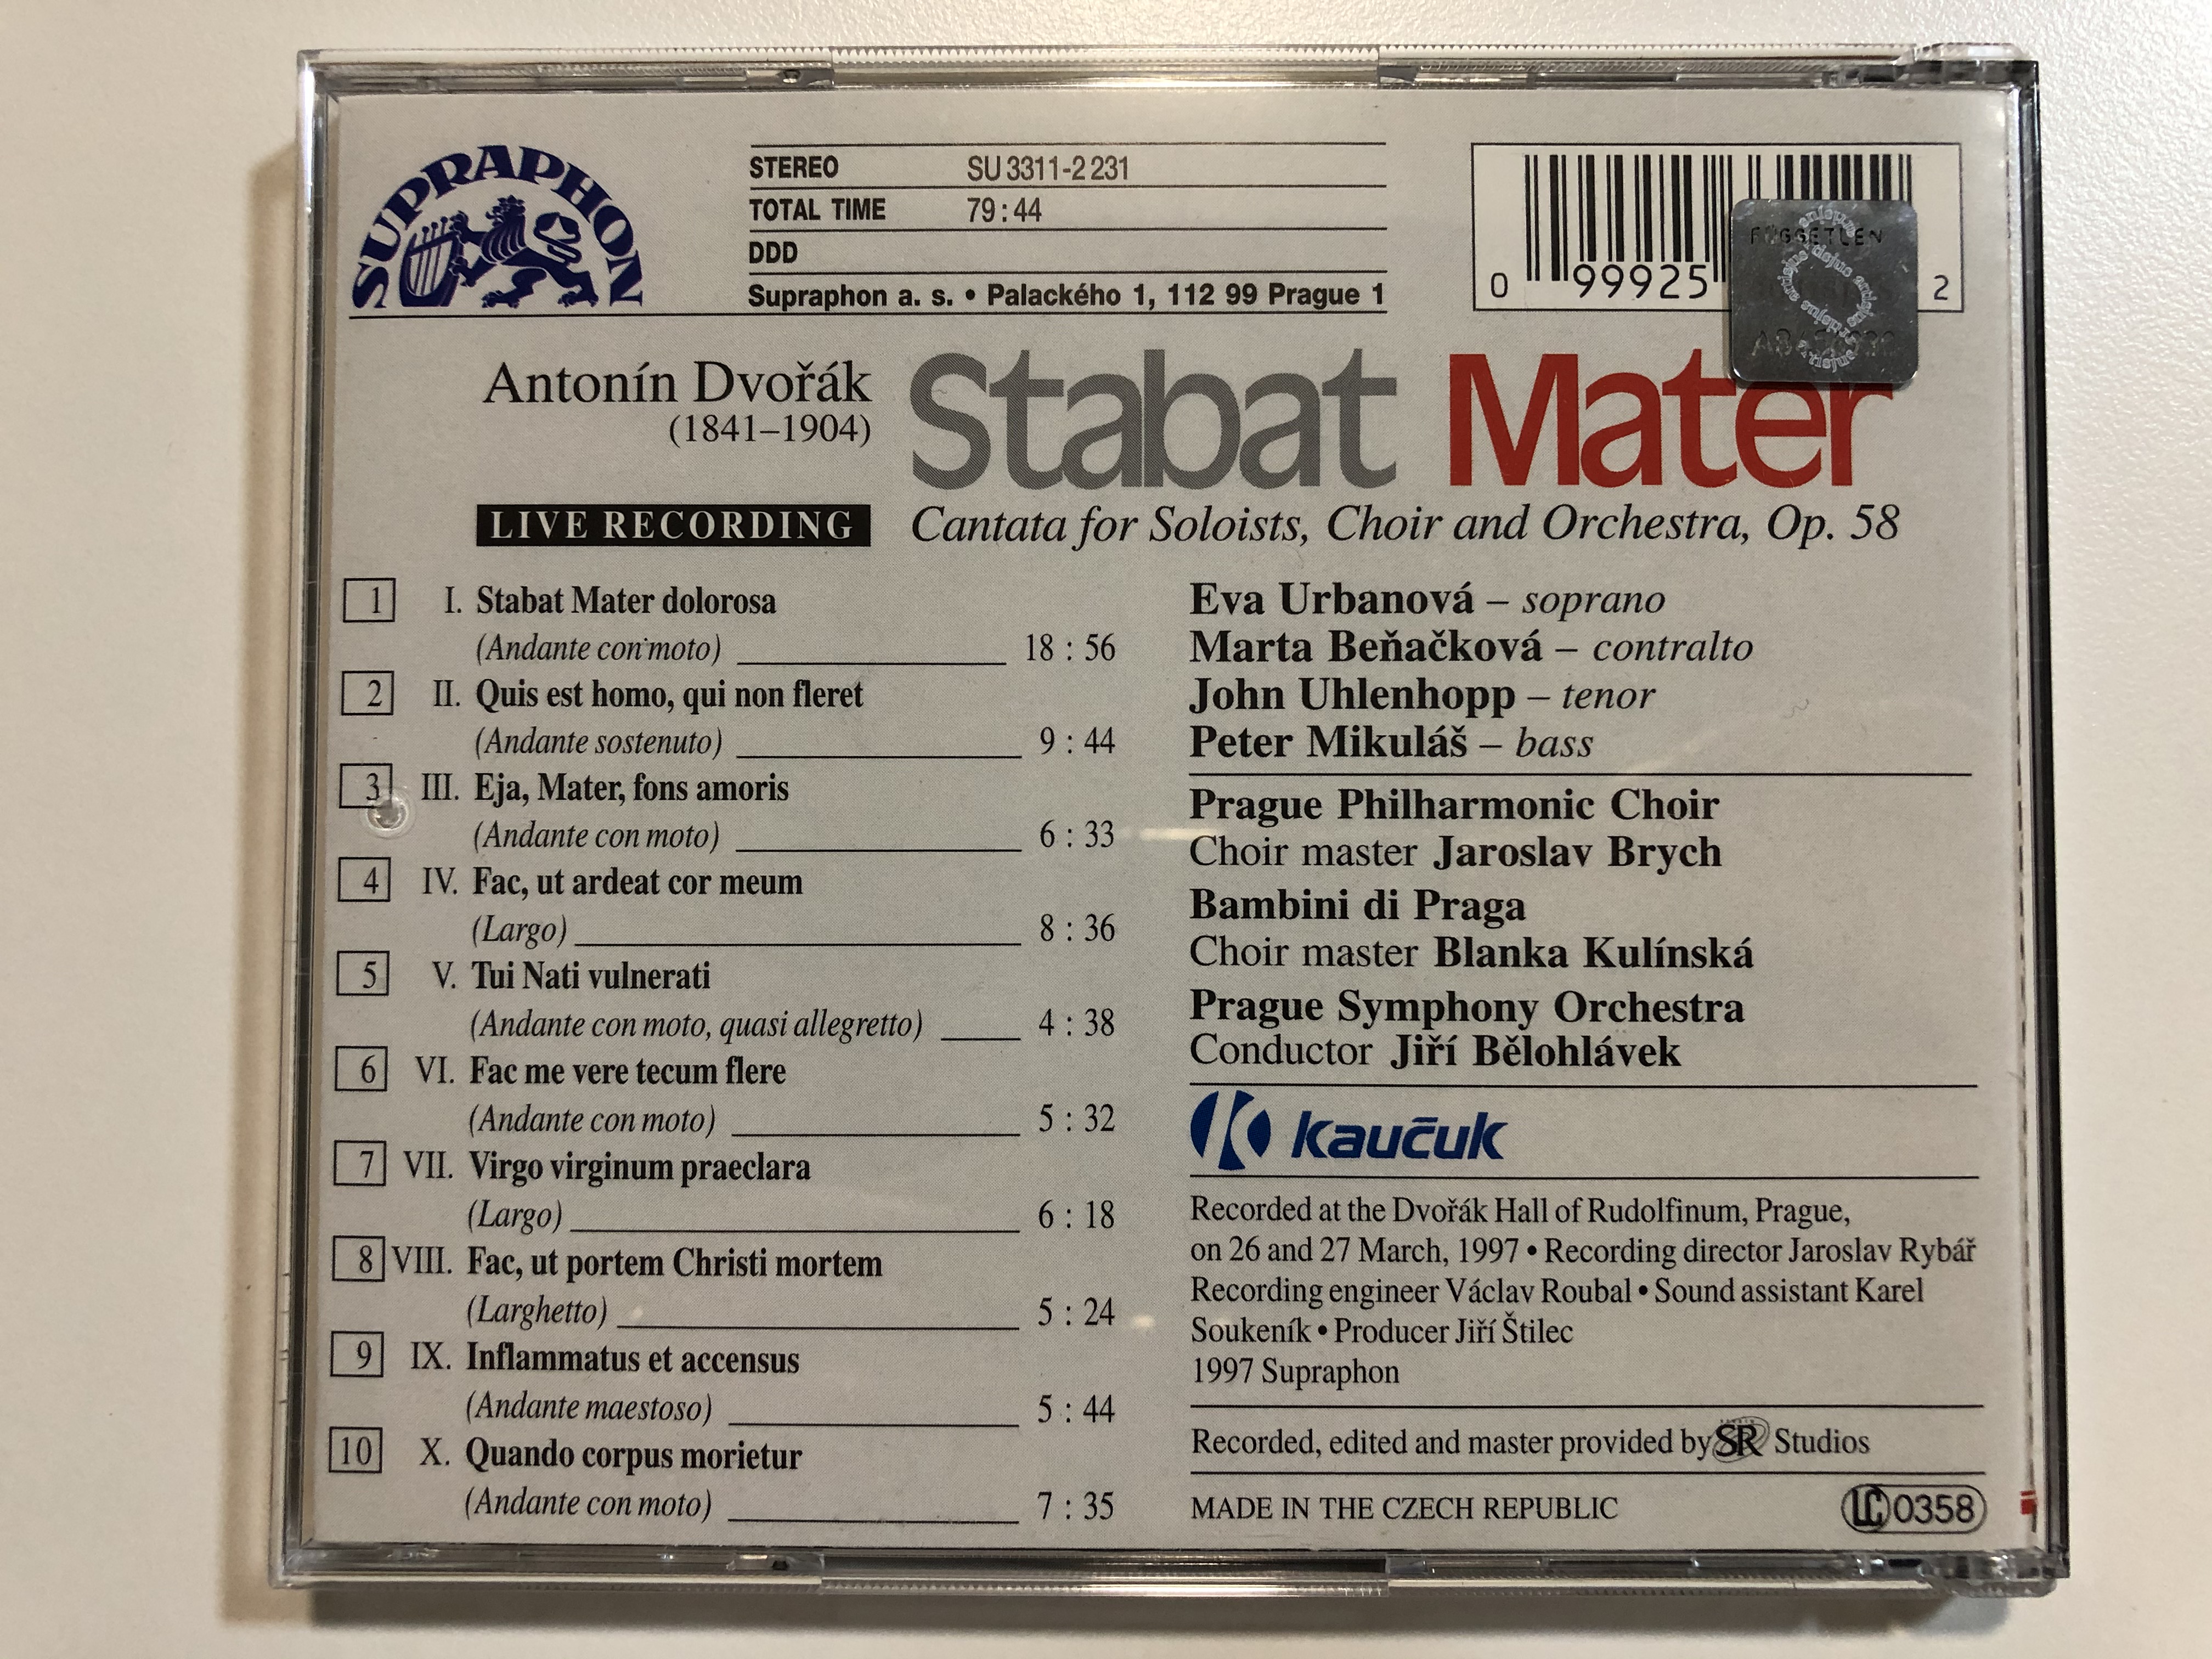 dvo-k-stabat-mater-prague-philharmonic-orchestra-prague-philharmonic-choir-bambini-di-praga-urbanov-be-a-kov-uhlenhopp-mikul-ji-b-lohl-vek-supraphon-audio-cd-1997-su-33-4-.jpg